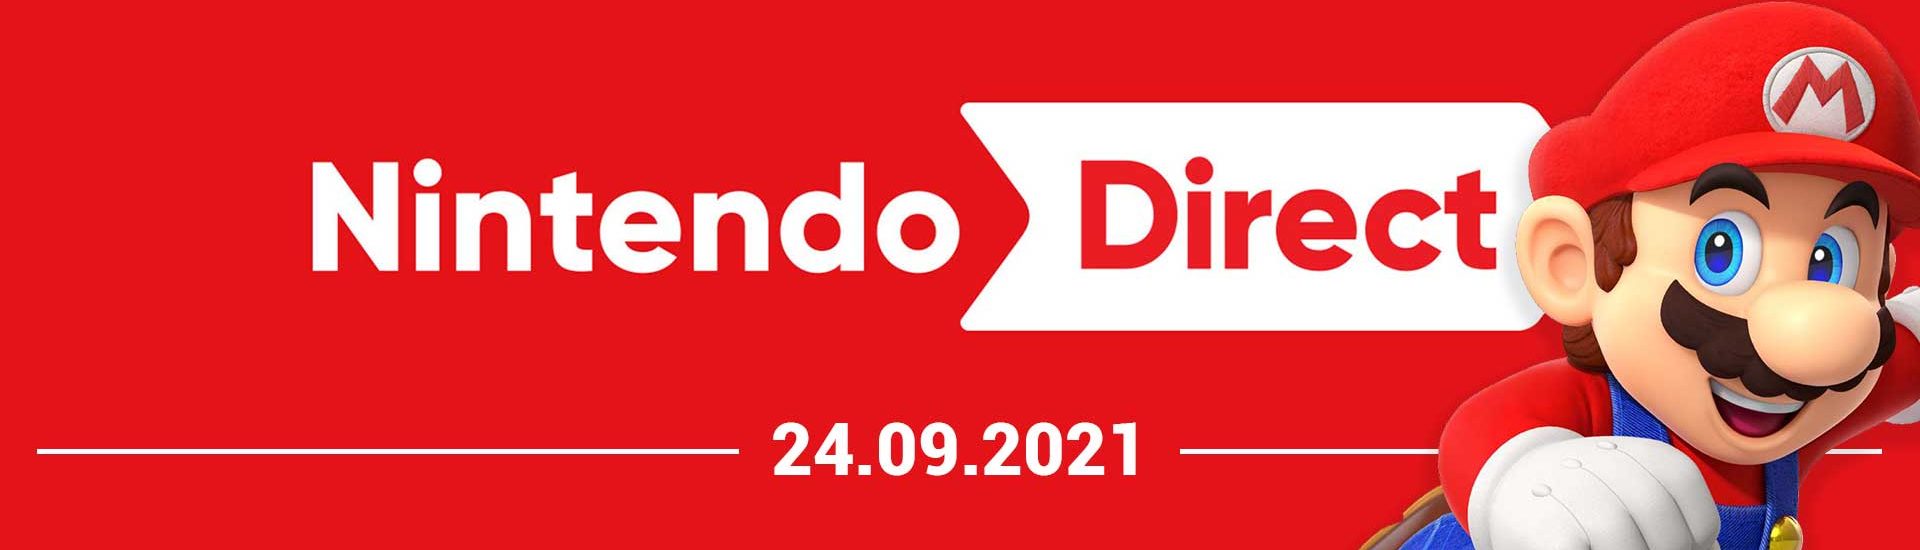 Nintendo Direct Ankündigung: Infos zur Uhrzeit, Livestream und mehr